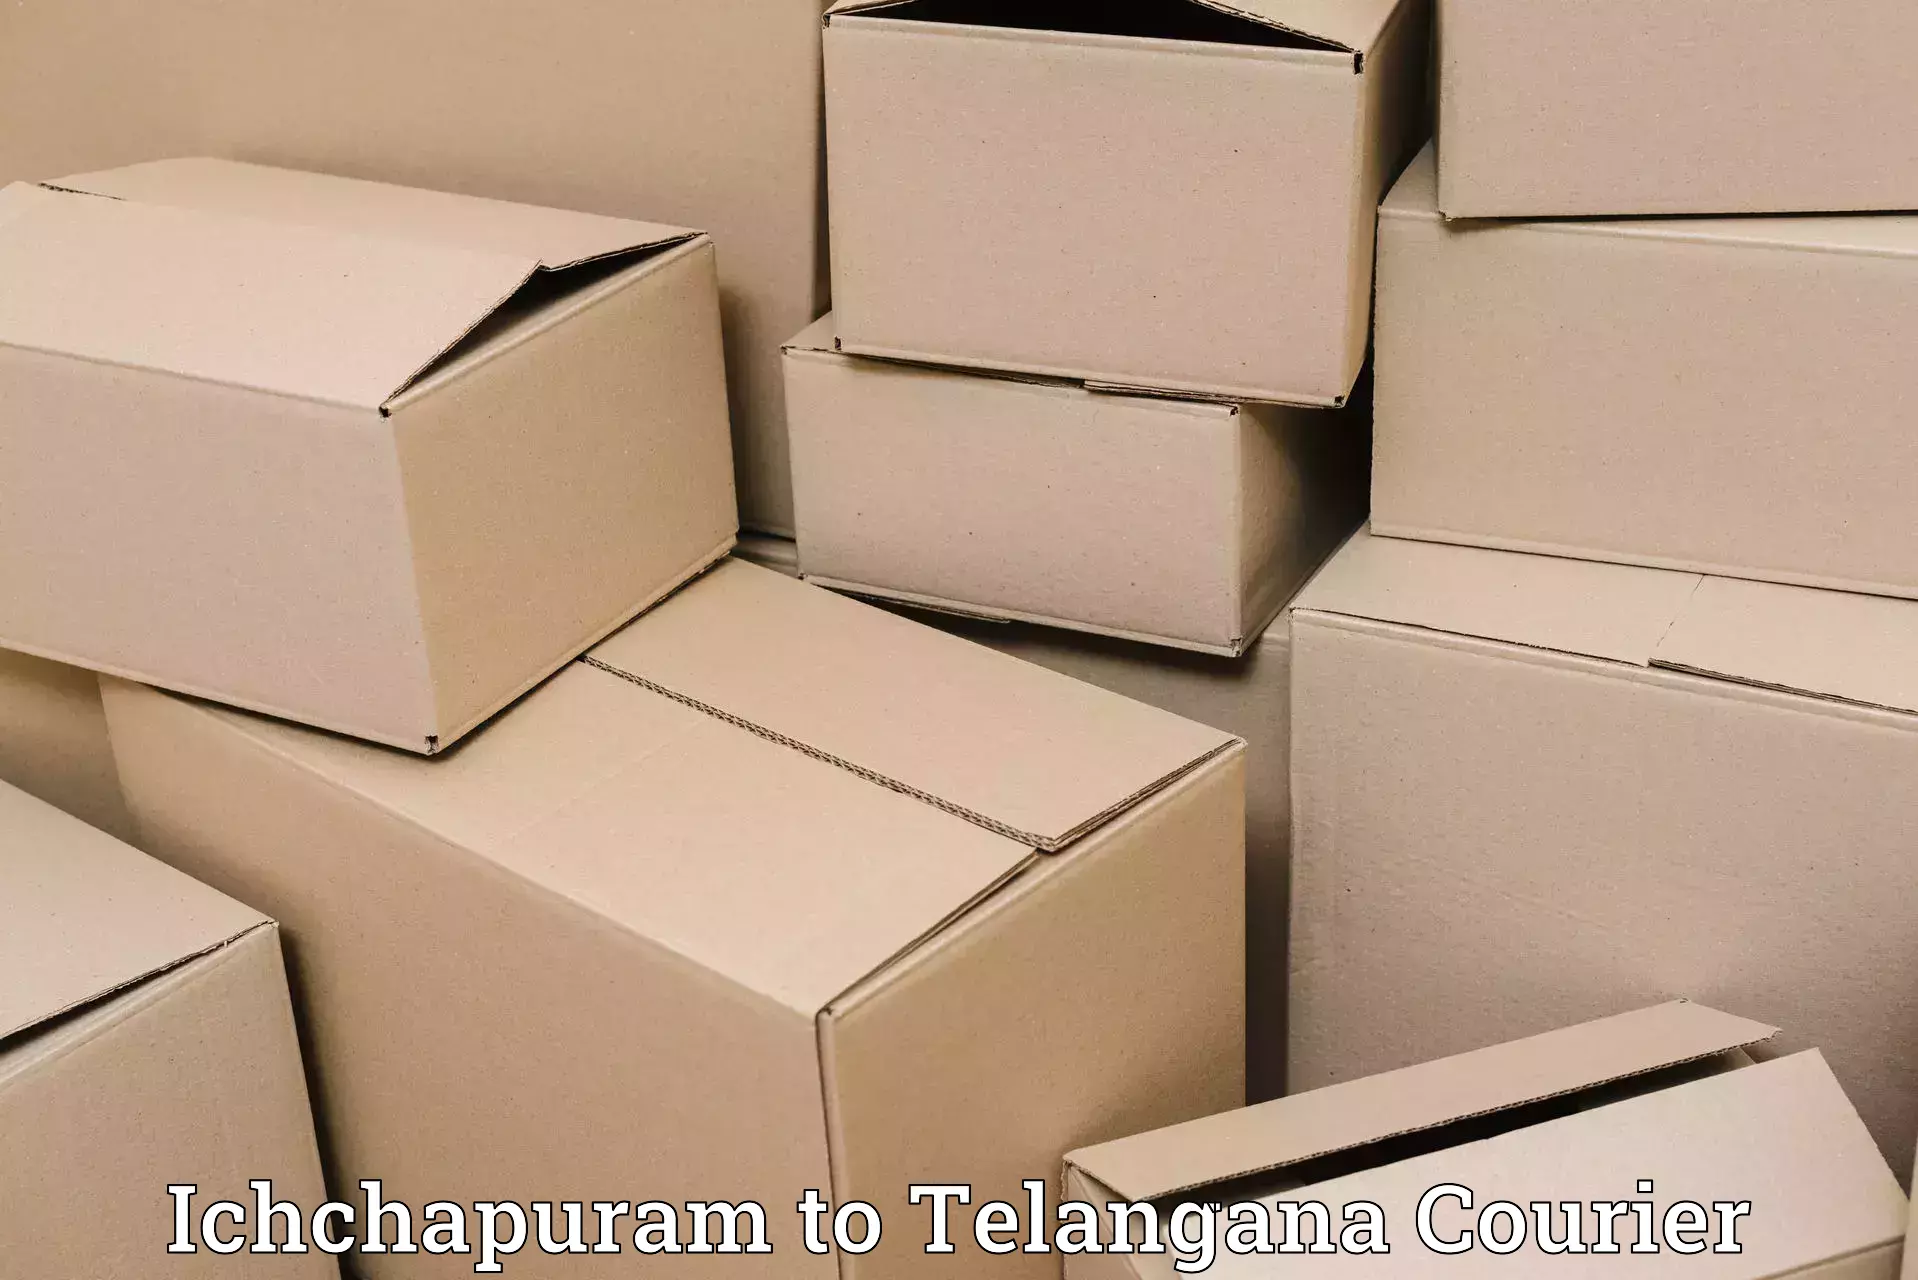 User-friendly courier app Ichchapuram to Wanaparthy